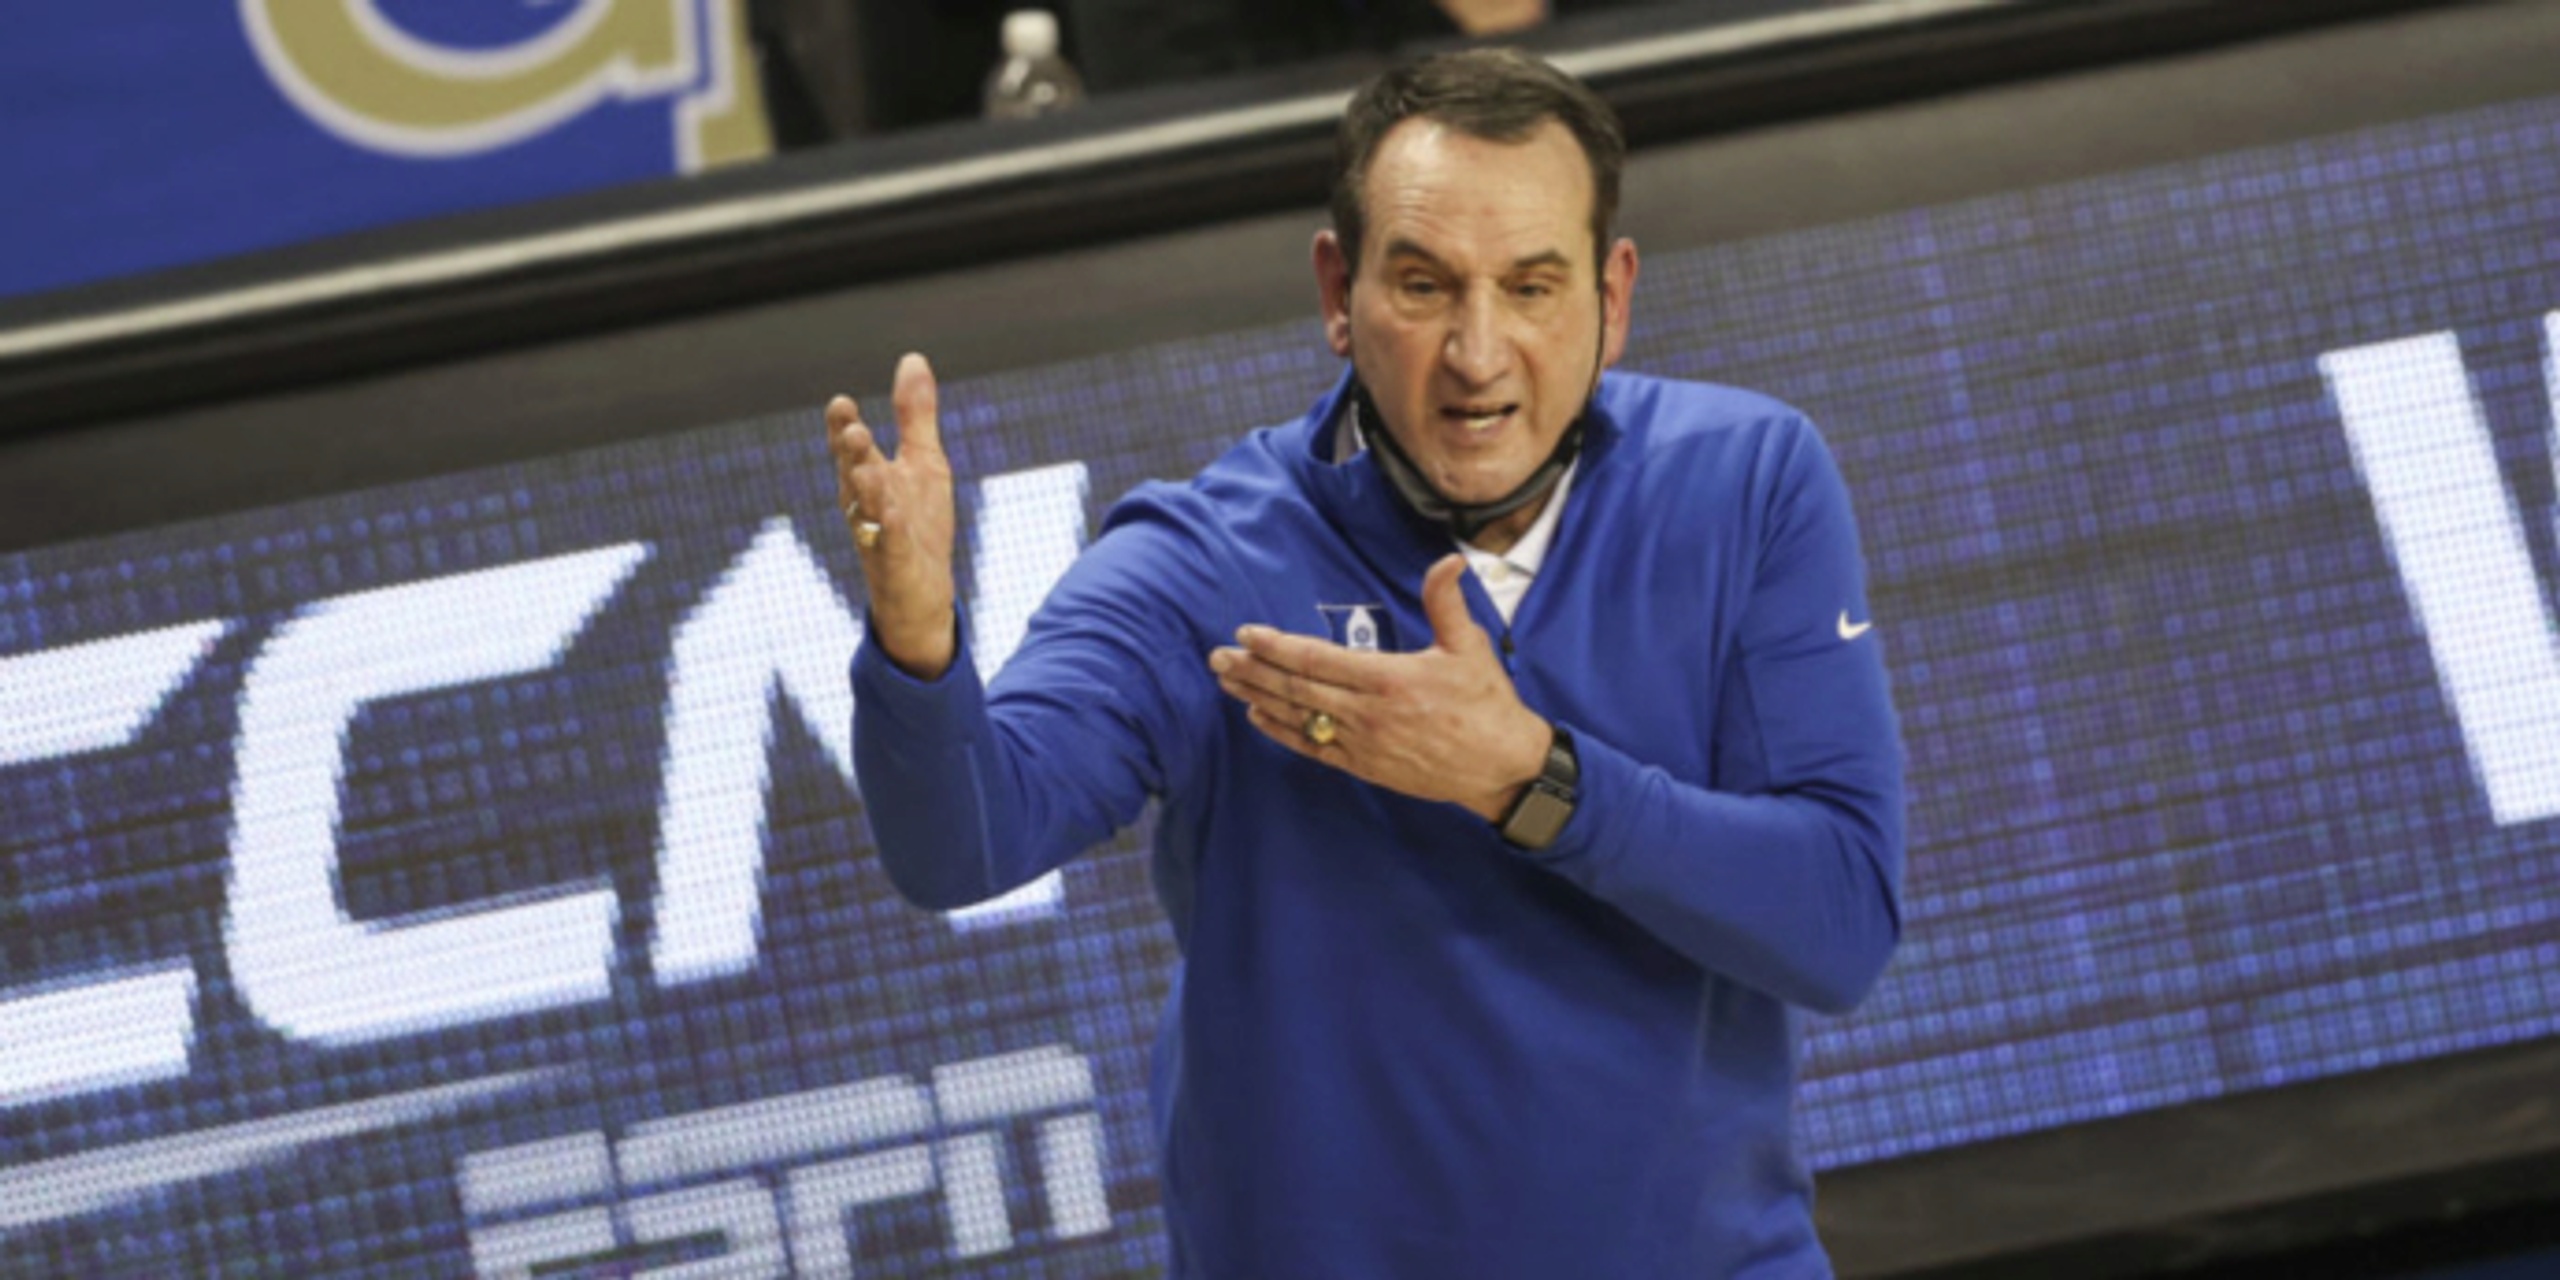 Mike Krzyzewski to retire, Jon Scheyer may take over as Duke's coach